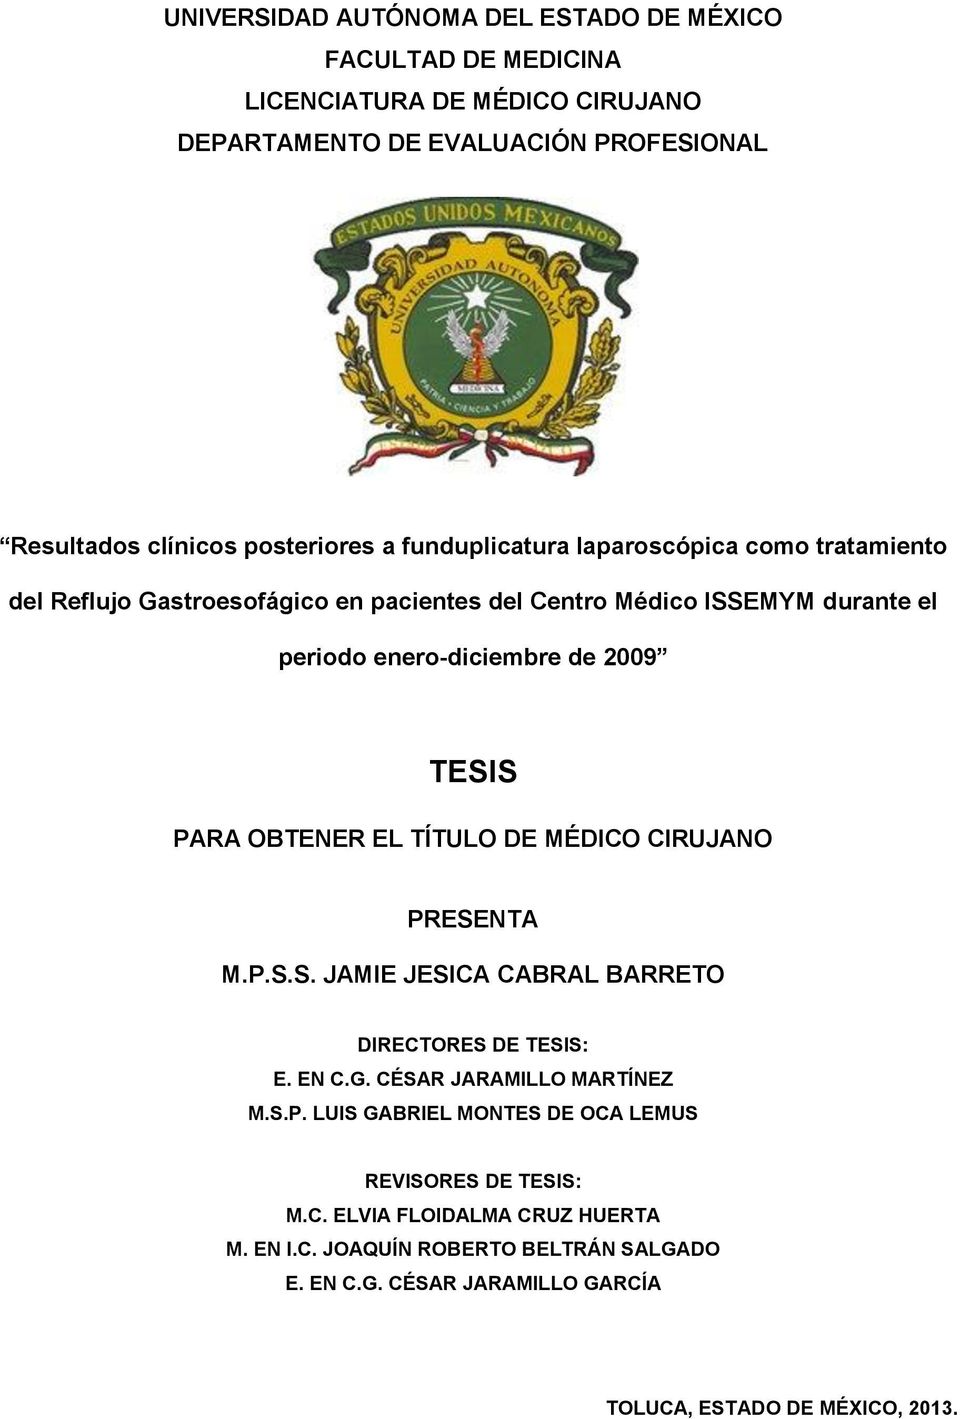 OBTENER EL TÍTULO DE MÉDICO CIRUJANO PRESENTA M.P.S.S. JAMIE JESICA CABRAL BARRETO DIRECTORES DE TESIS: E. EN C.G. CÉSAR JARAMILLO MARTÍNEZ M.S.P. LUIS GABRIEL MONTES DE OCA LEMUS REVISORES DE TESIS: M.